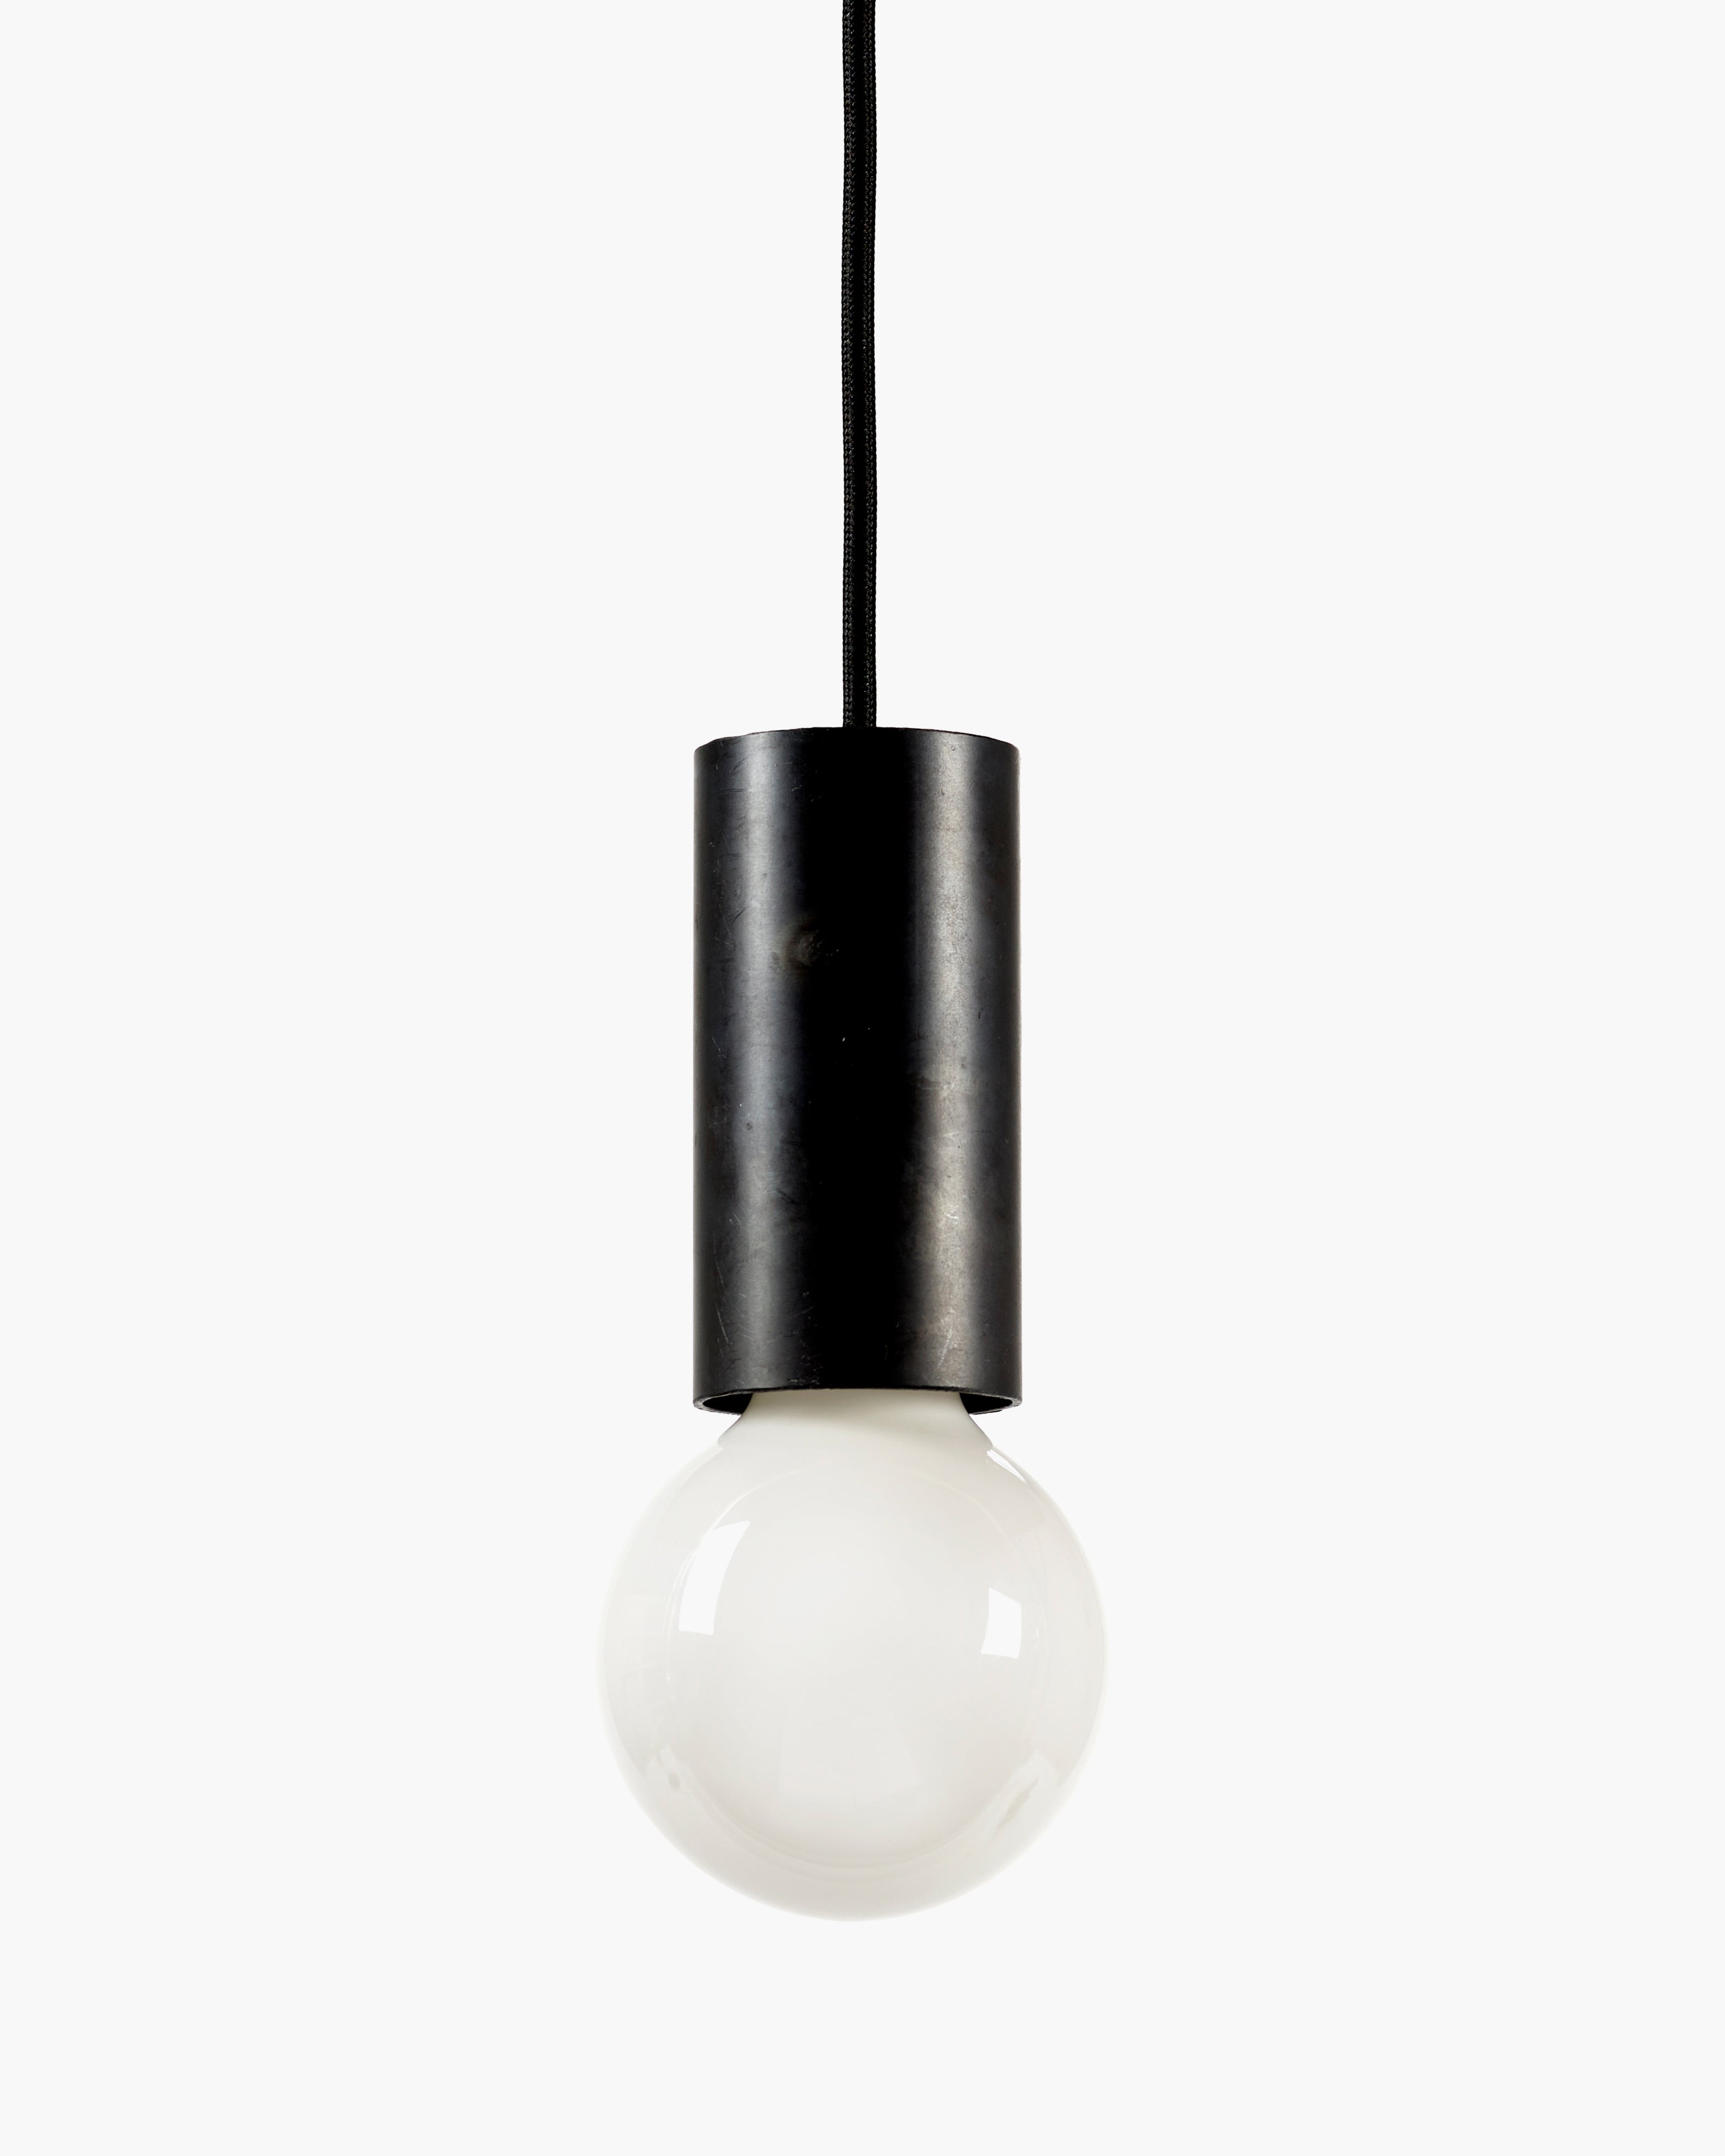 Sofisticato pendant lamps by Koen Van Guijze for Serax – SERAX